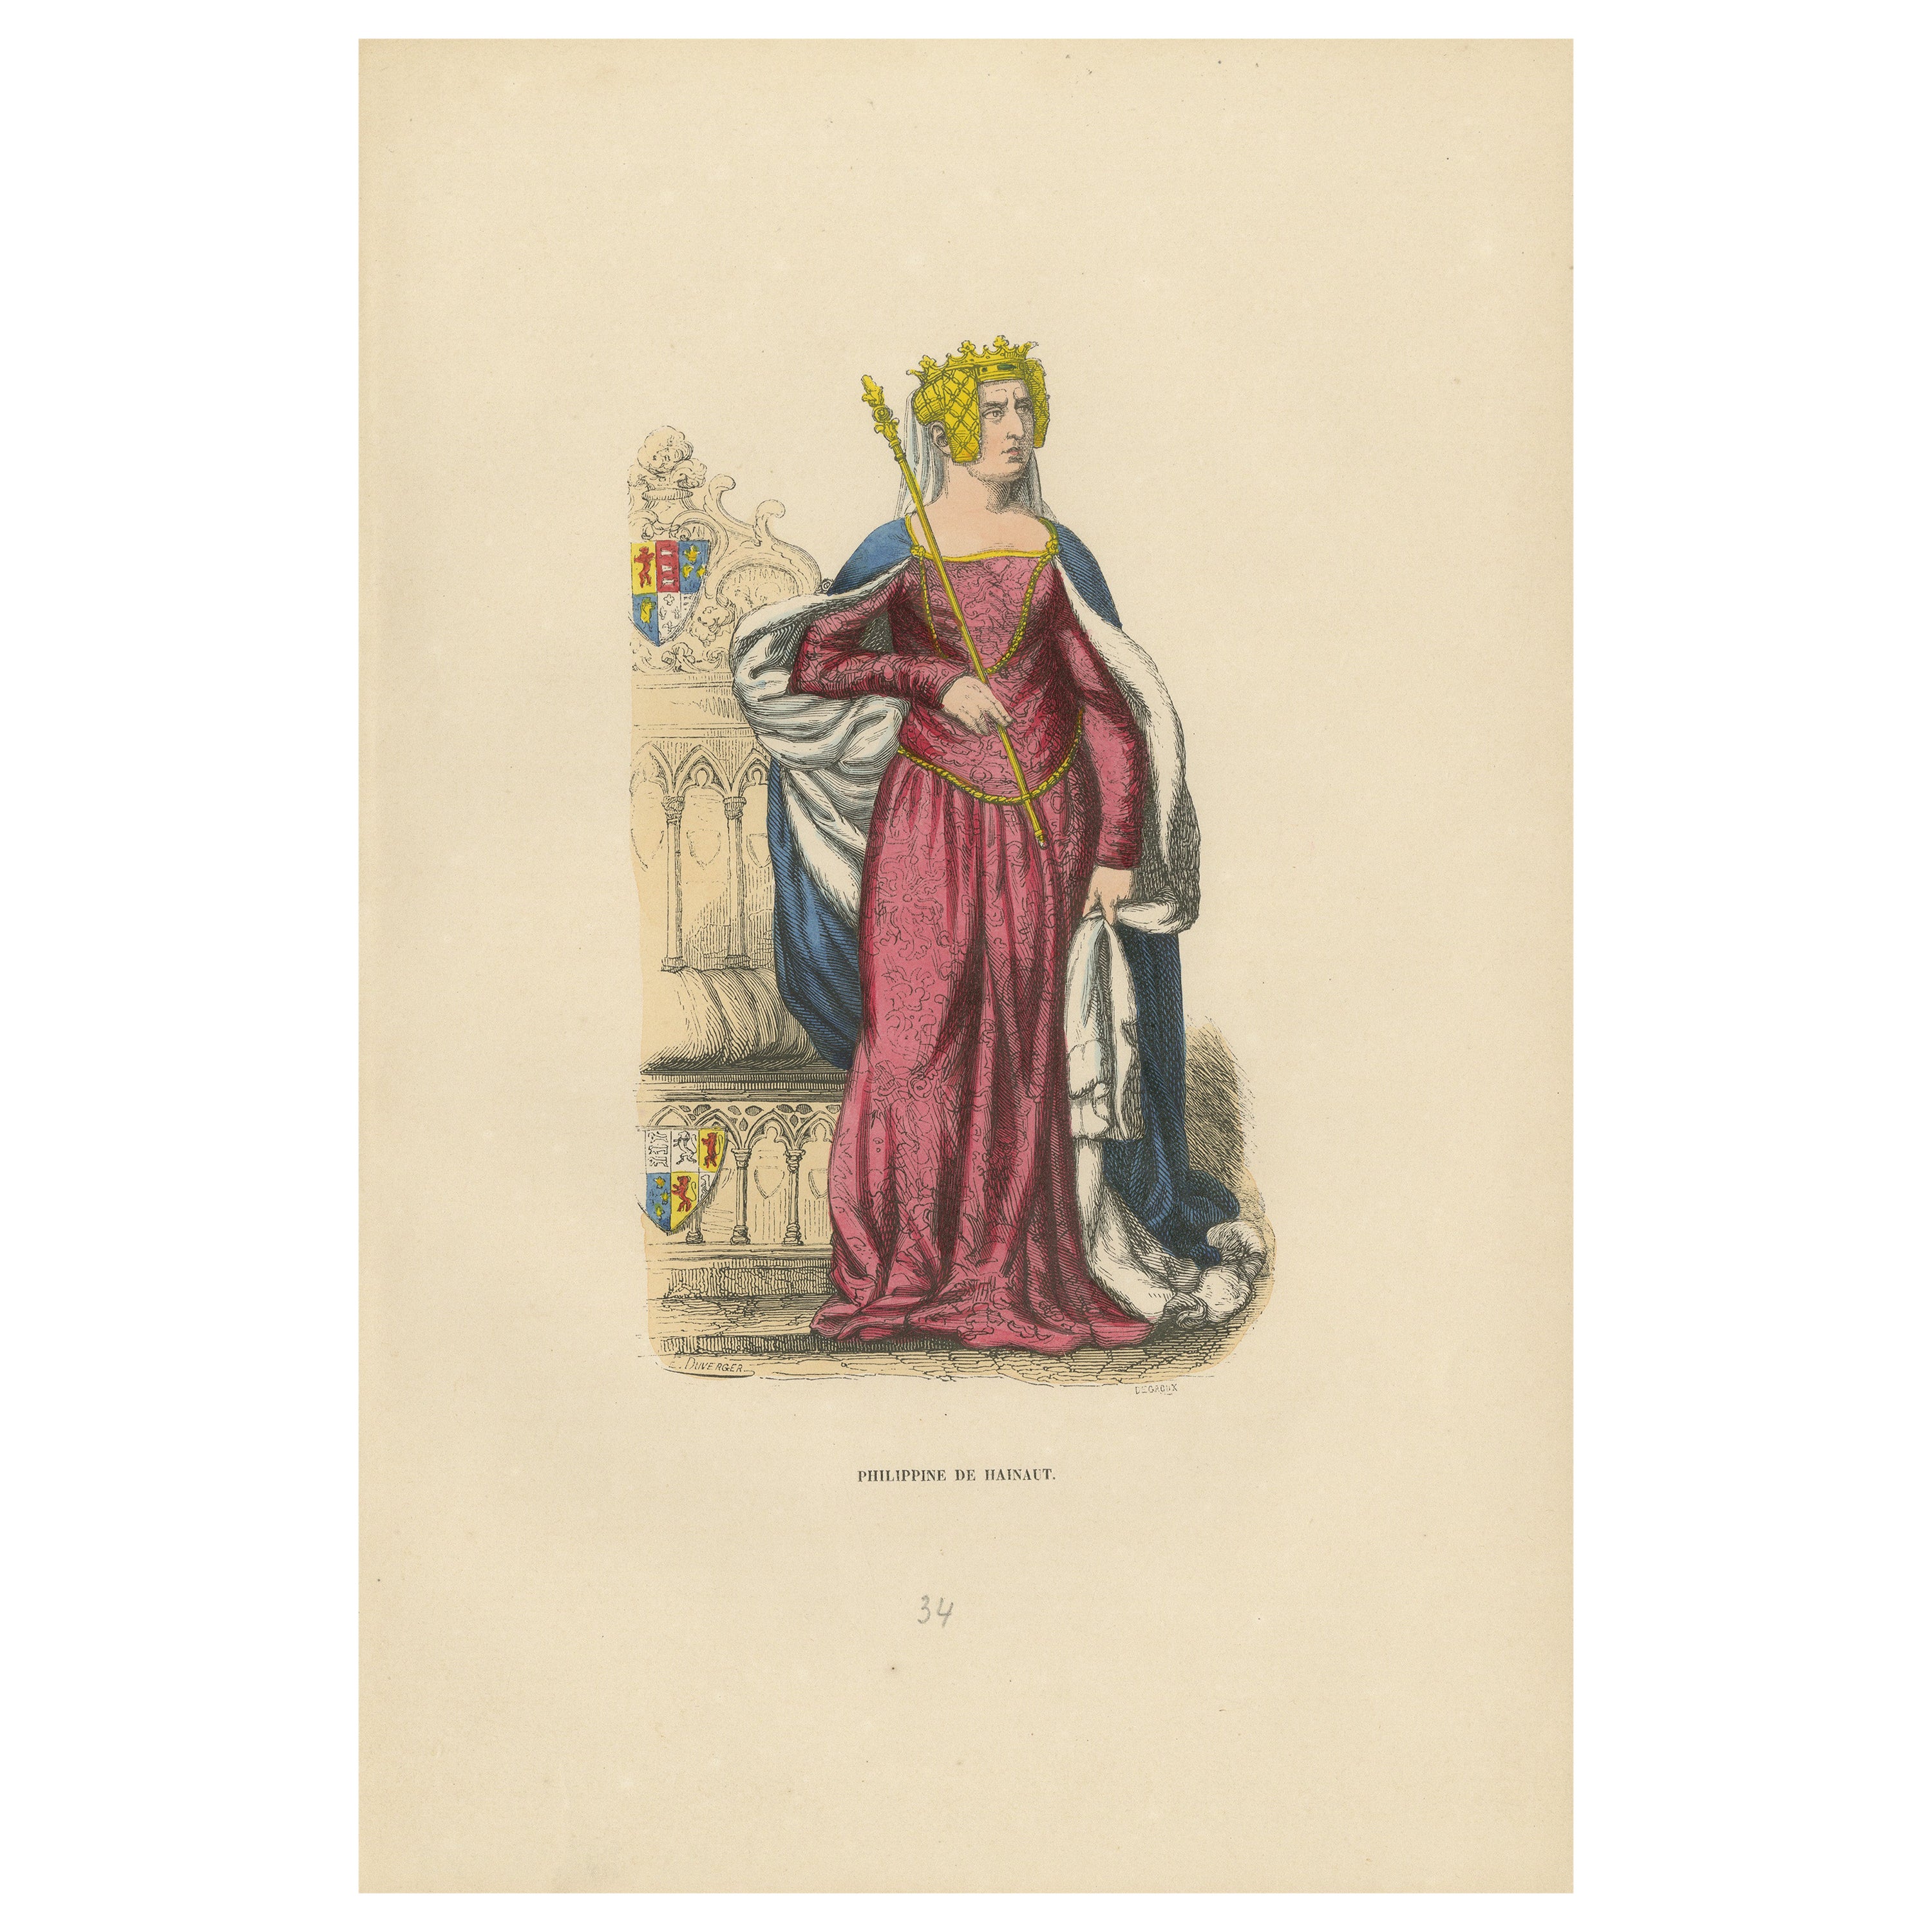 Queen Philippa of Hainaut in Ceremonial Attire, Costume Di Moyen Age, 1847